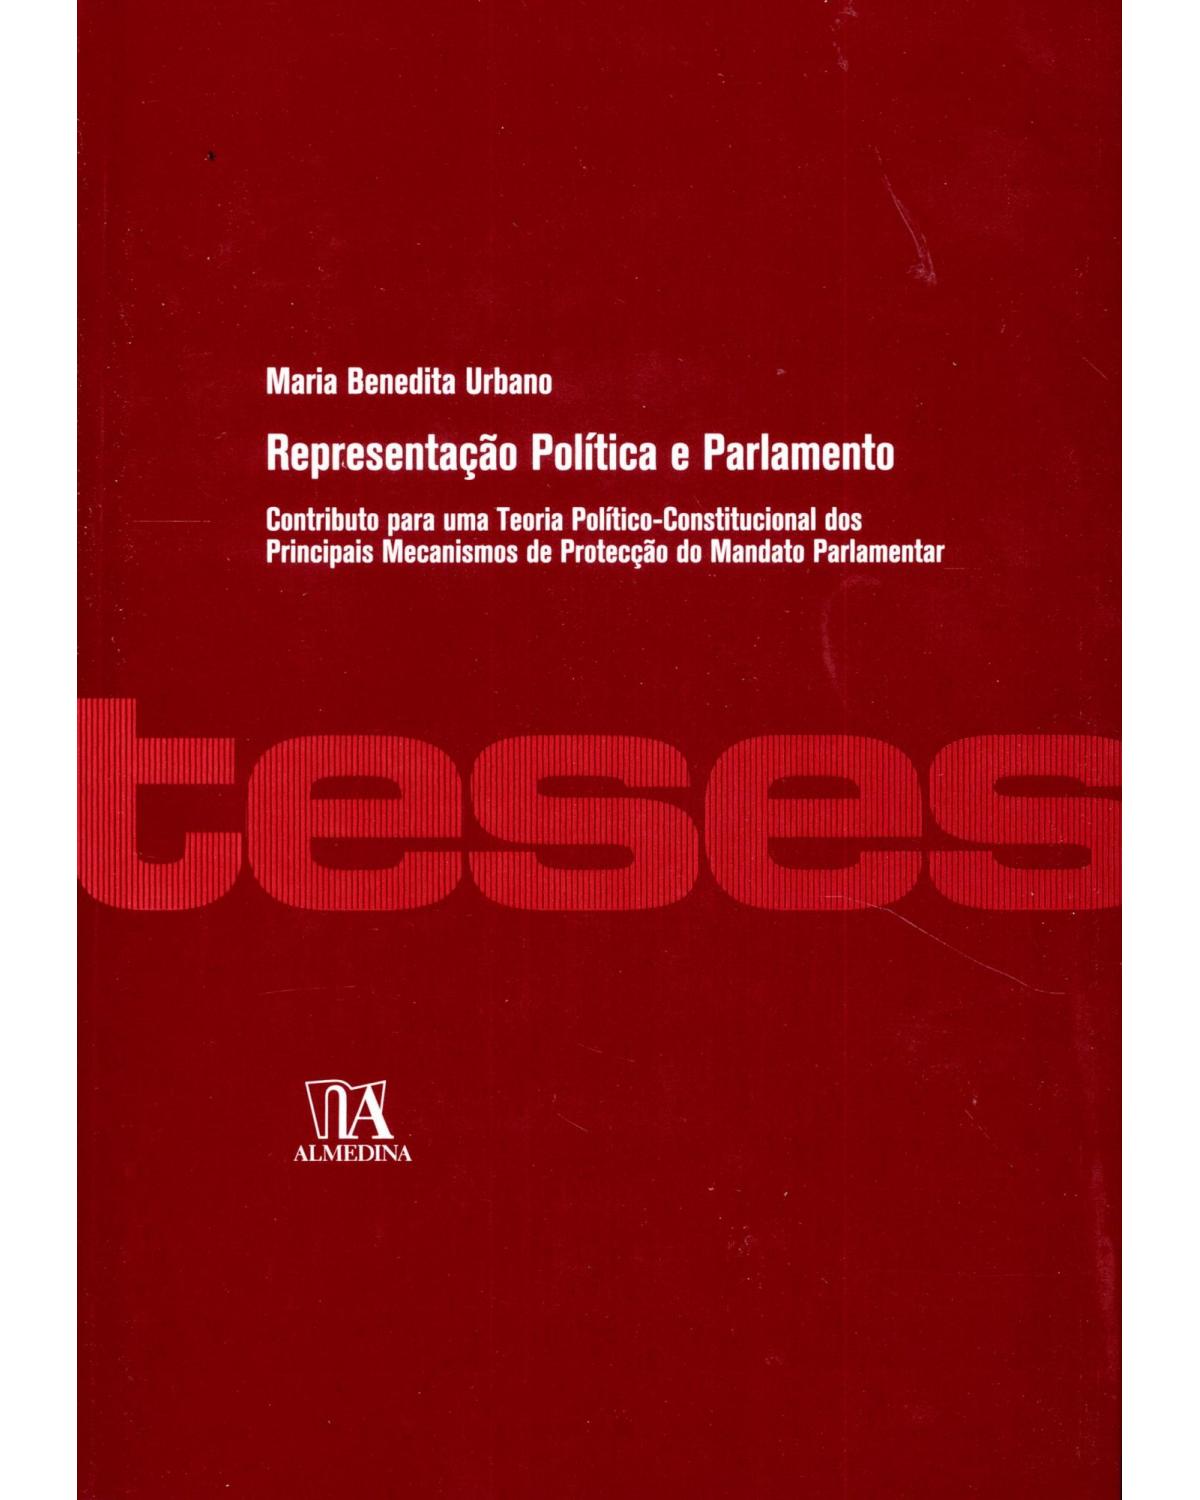 Representação política e parlamento - contributo para uma teoria político-constitucional dos principais mecanismos de protecção do mandato parlamentar - 1ª Edição | 2009